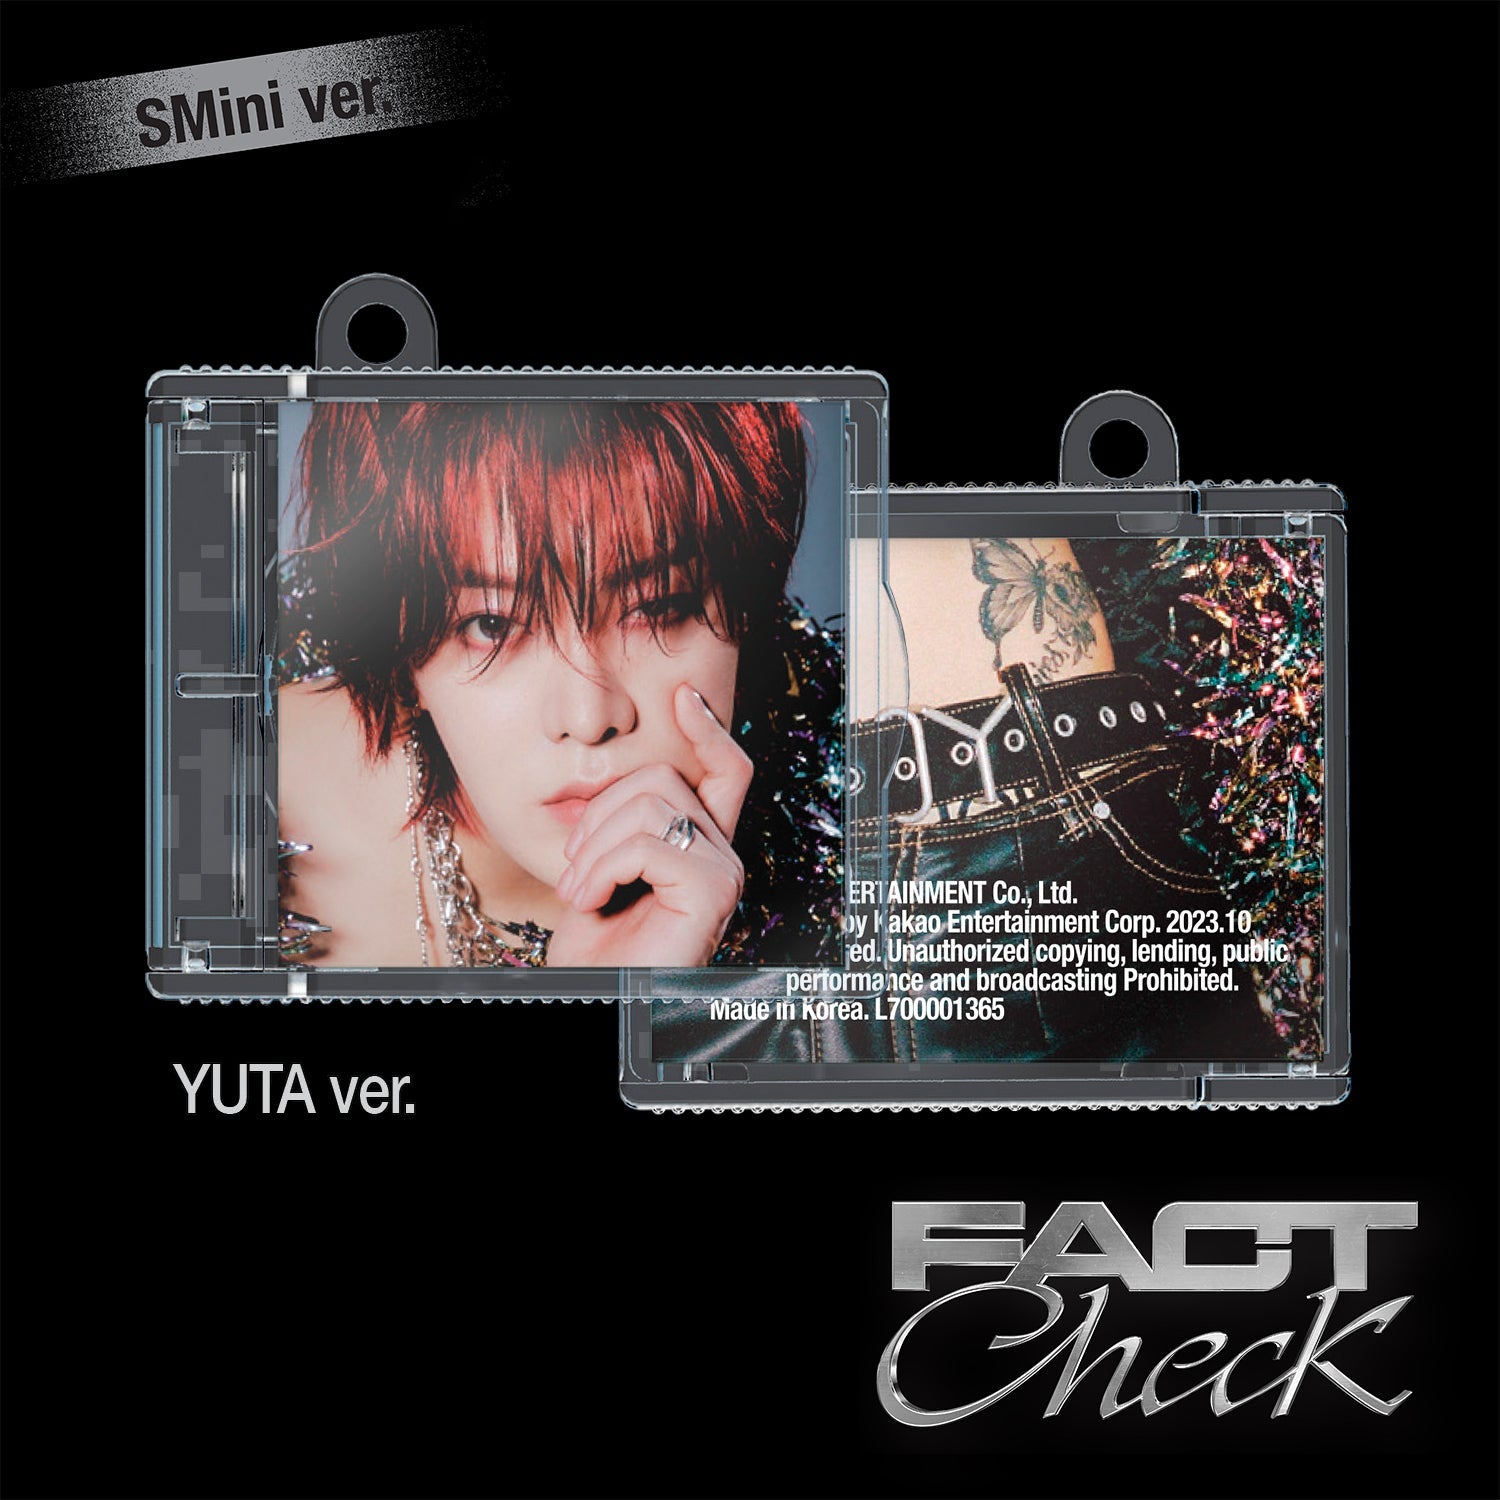 NCT 127 5TH ALBUM 'FACT CHECK' (SMINI) YUTA VERSION COVER